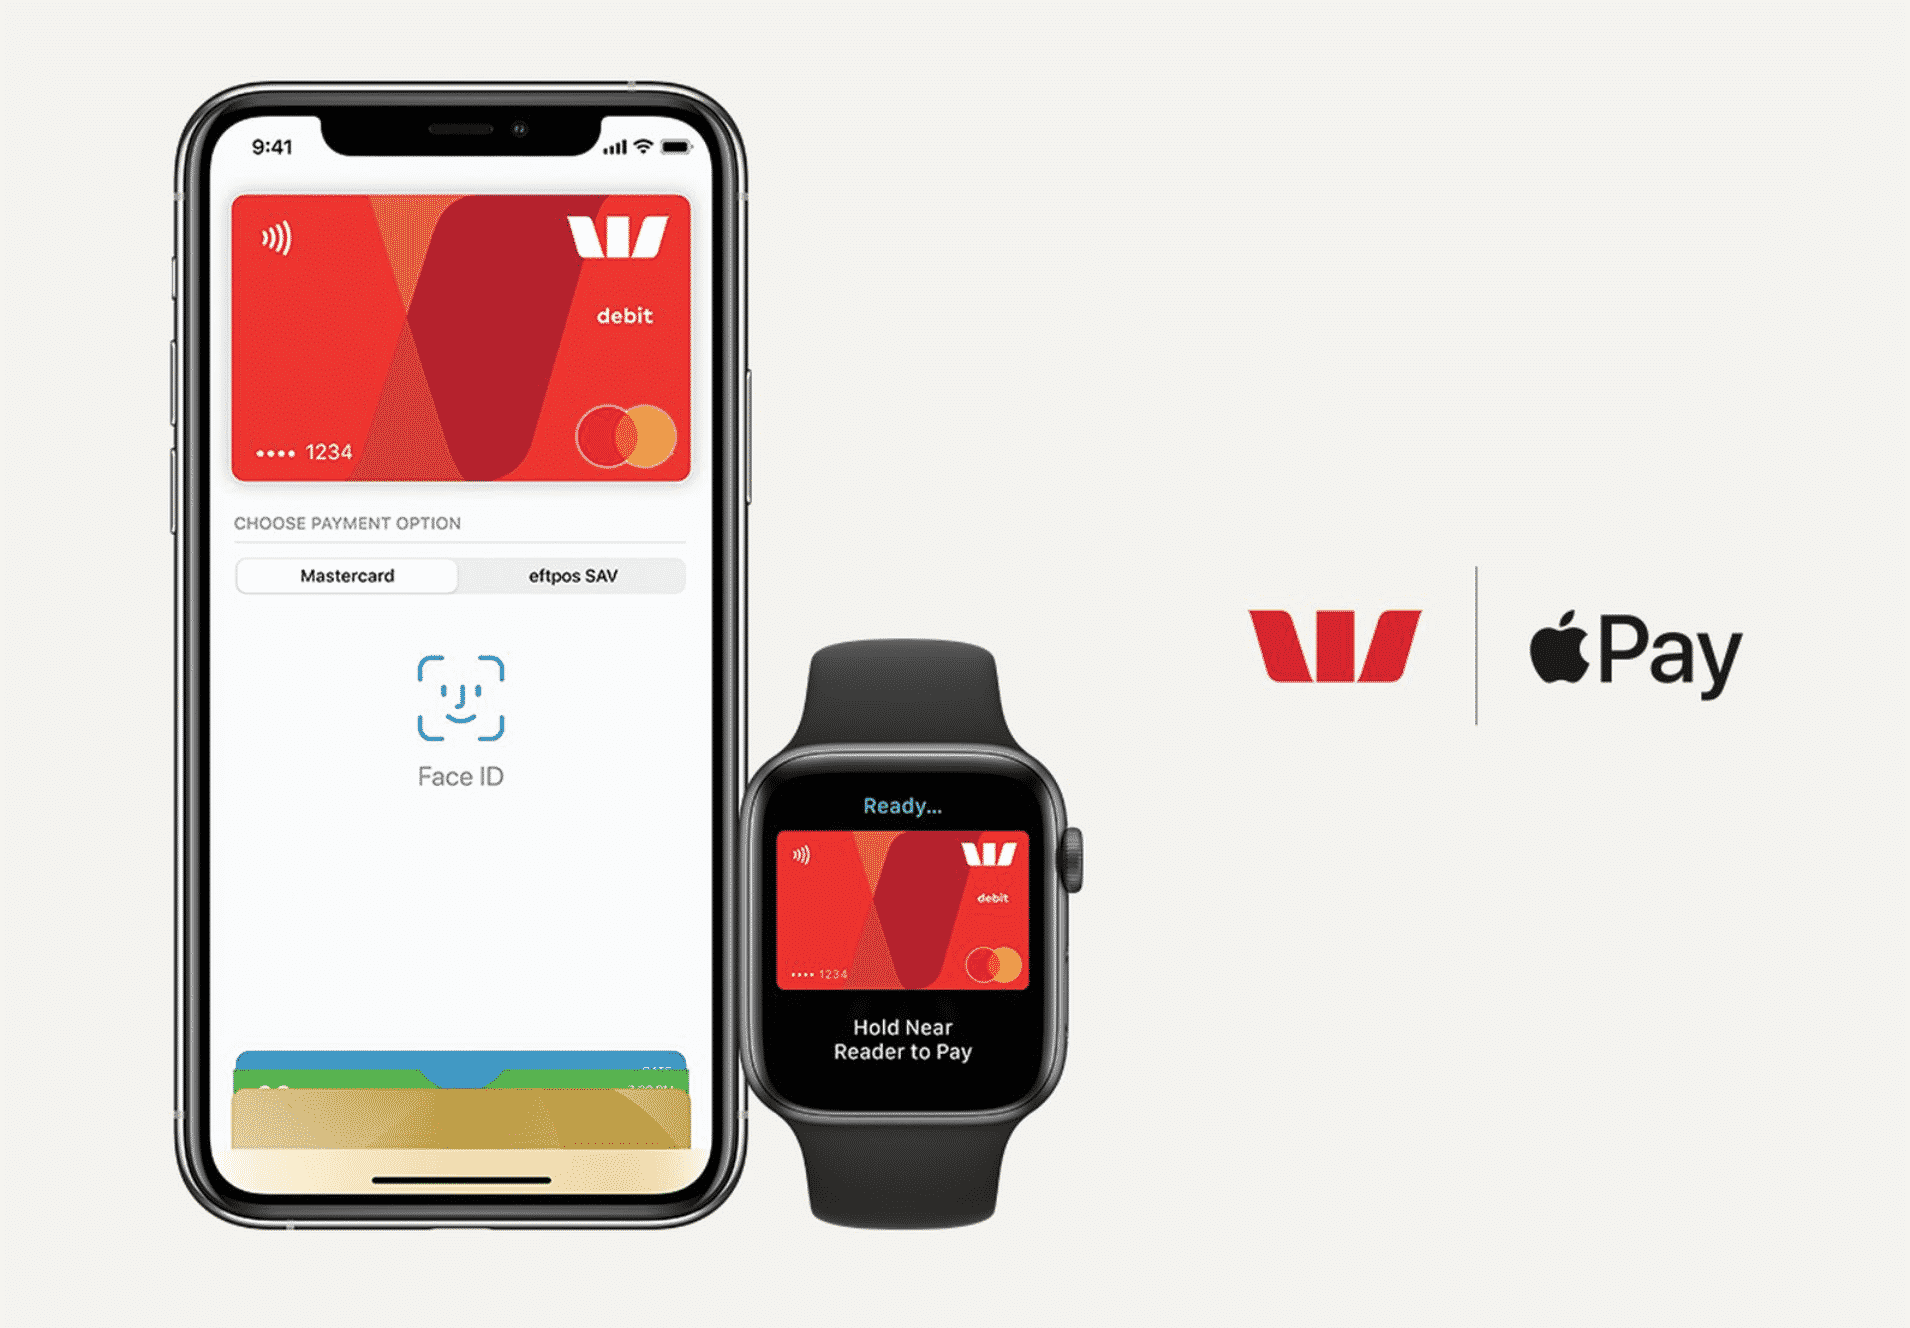 Австралийский банк Westpac также поддерживает Apple Pay